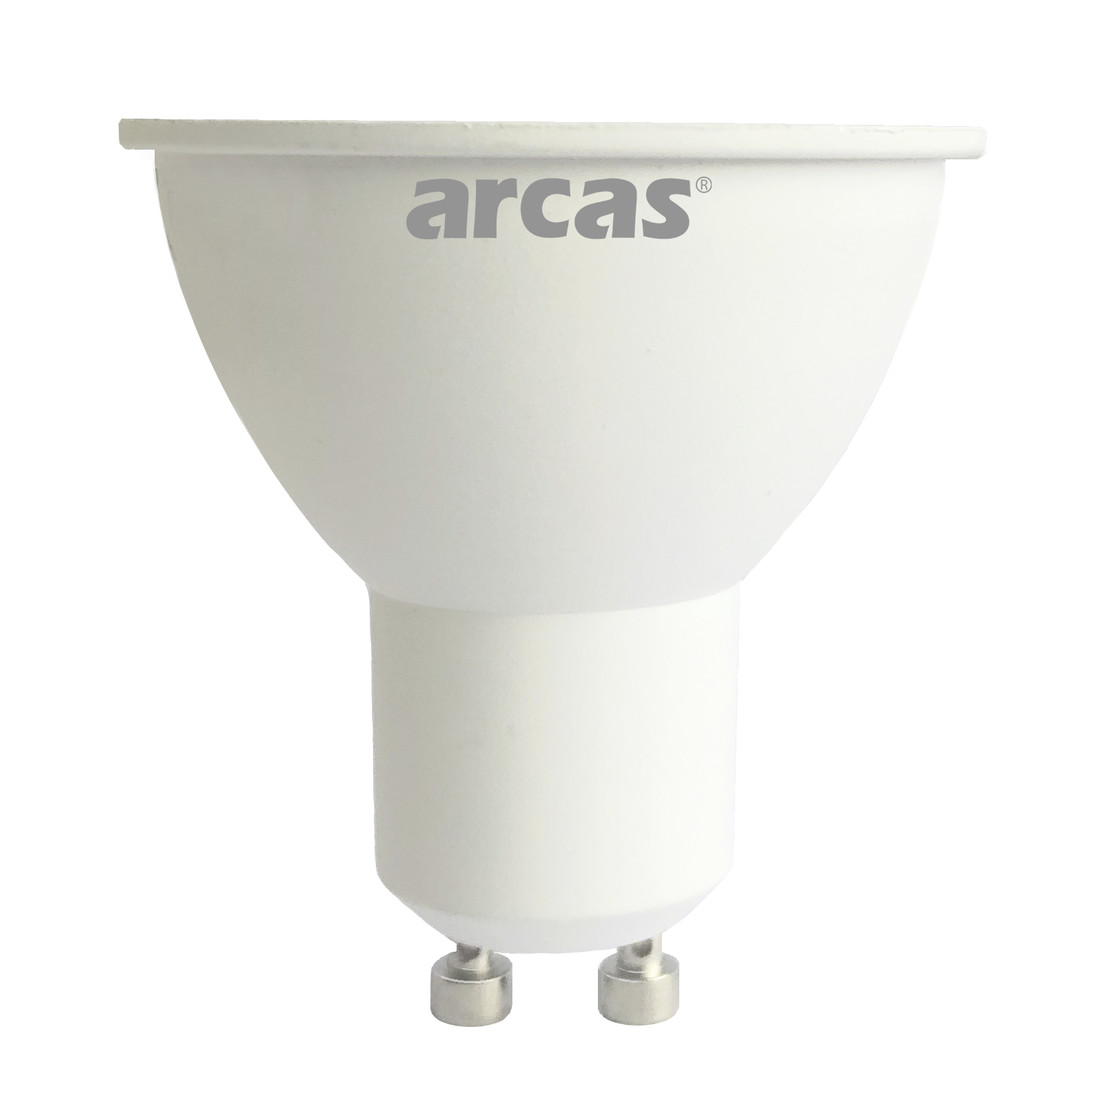 Arcas GU10 LED Lampe Spot 5W 3000K 400 Lumen Warmweiss